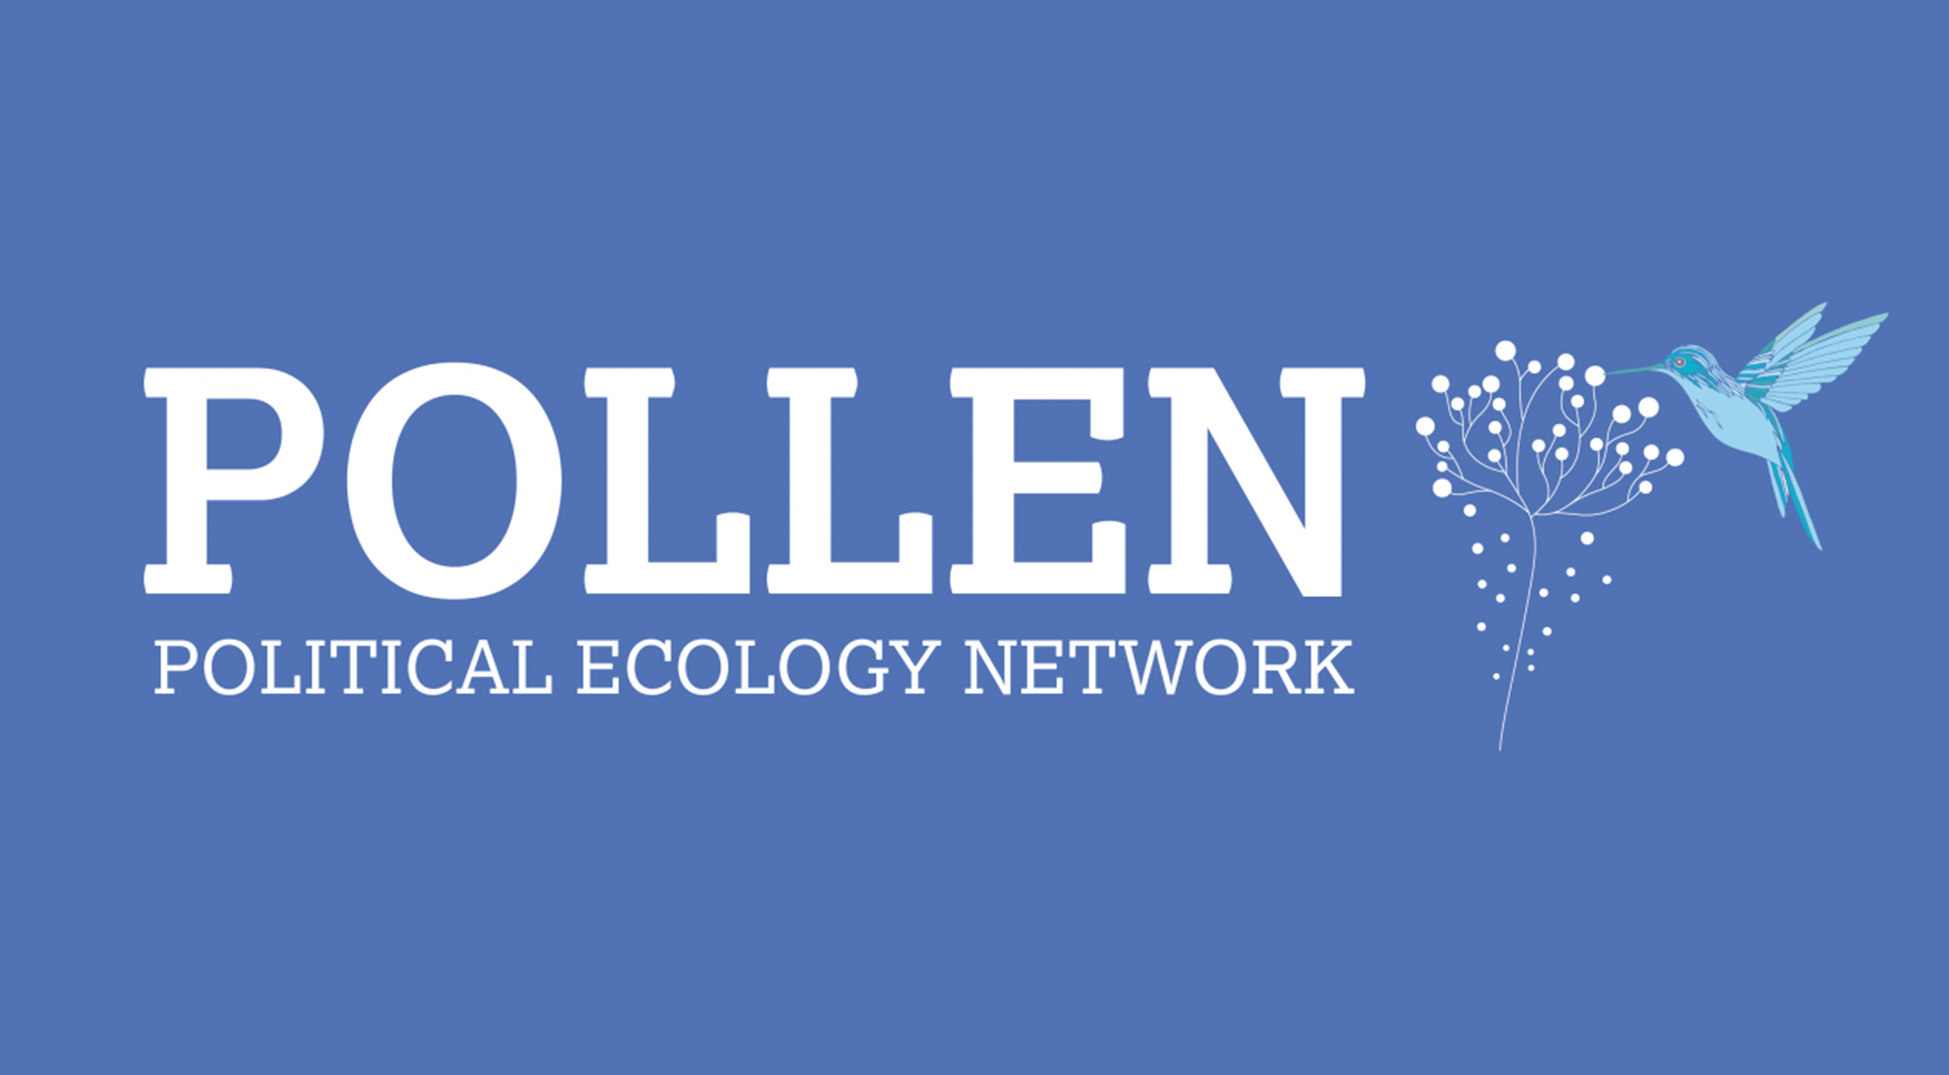 La Fundació ENT se une a la red internacional de ecología política POLLEN